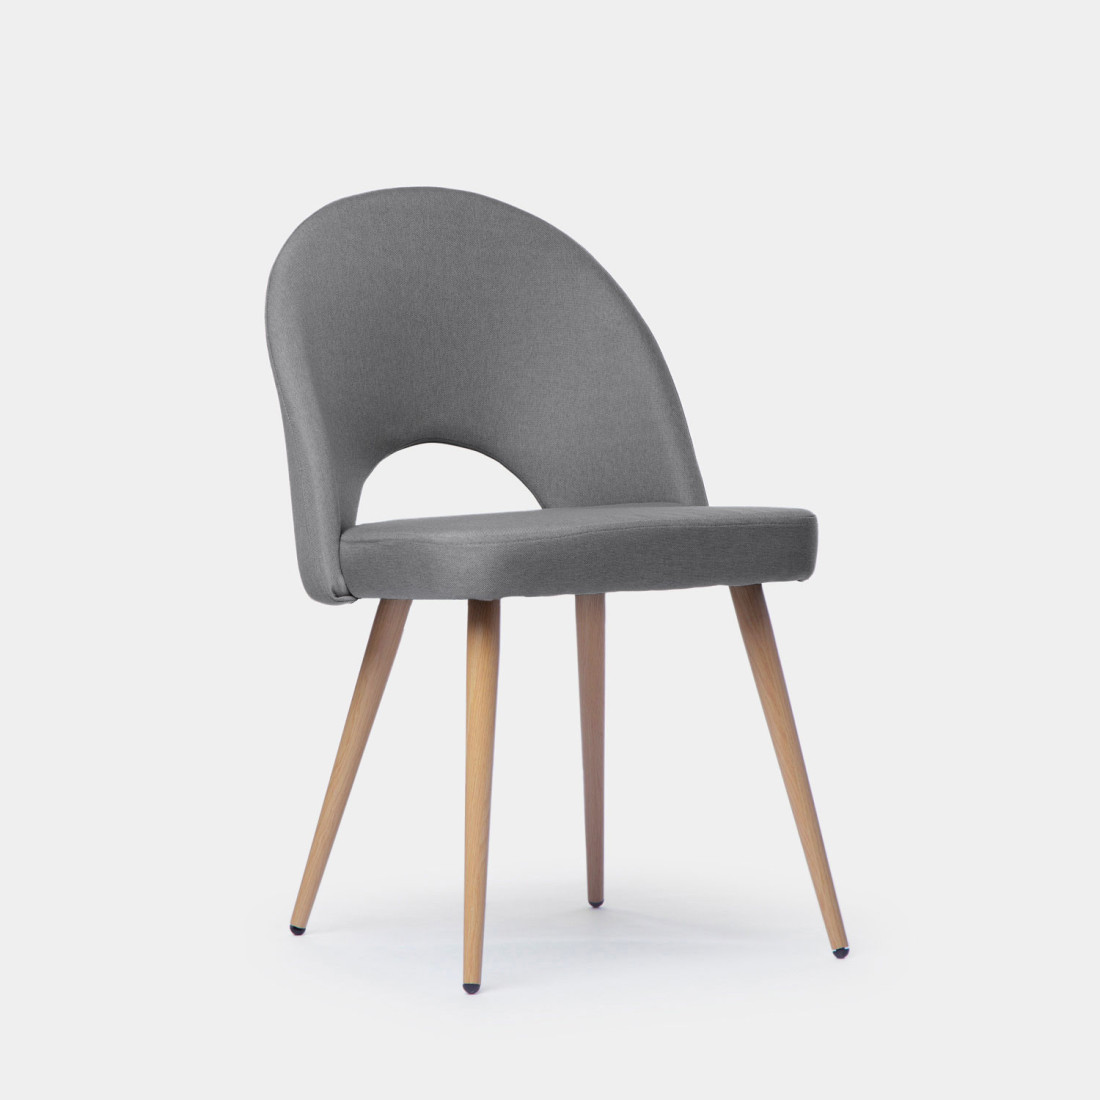 La silla de comedor tapizada Blair es una preciosa silla con respaldo ergonómico y apertura central fabricado en poliéster